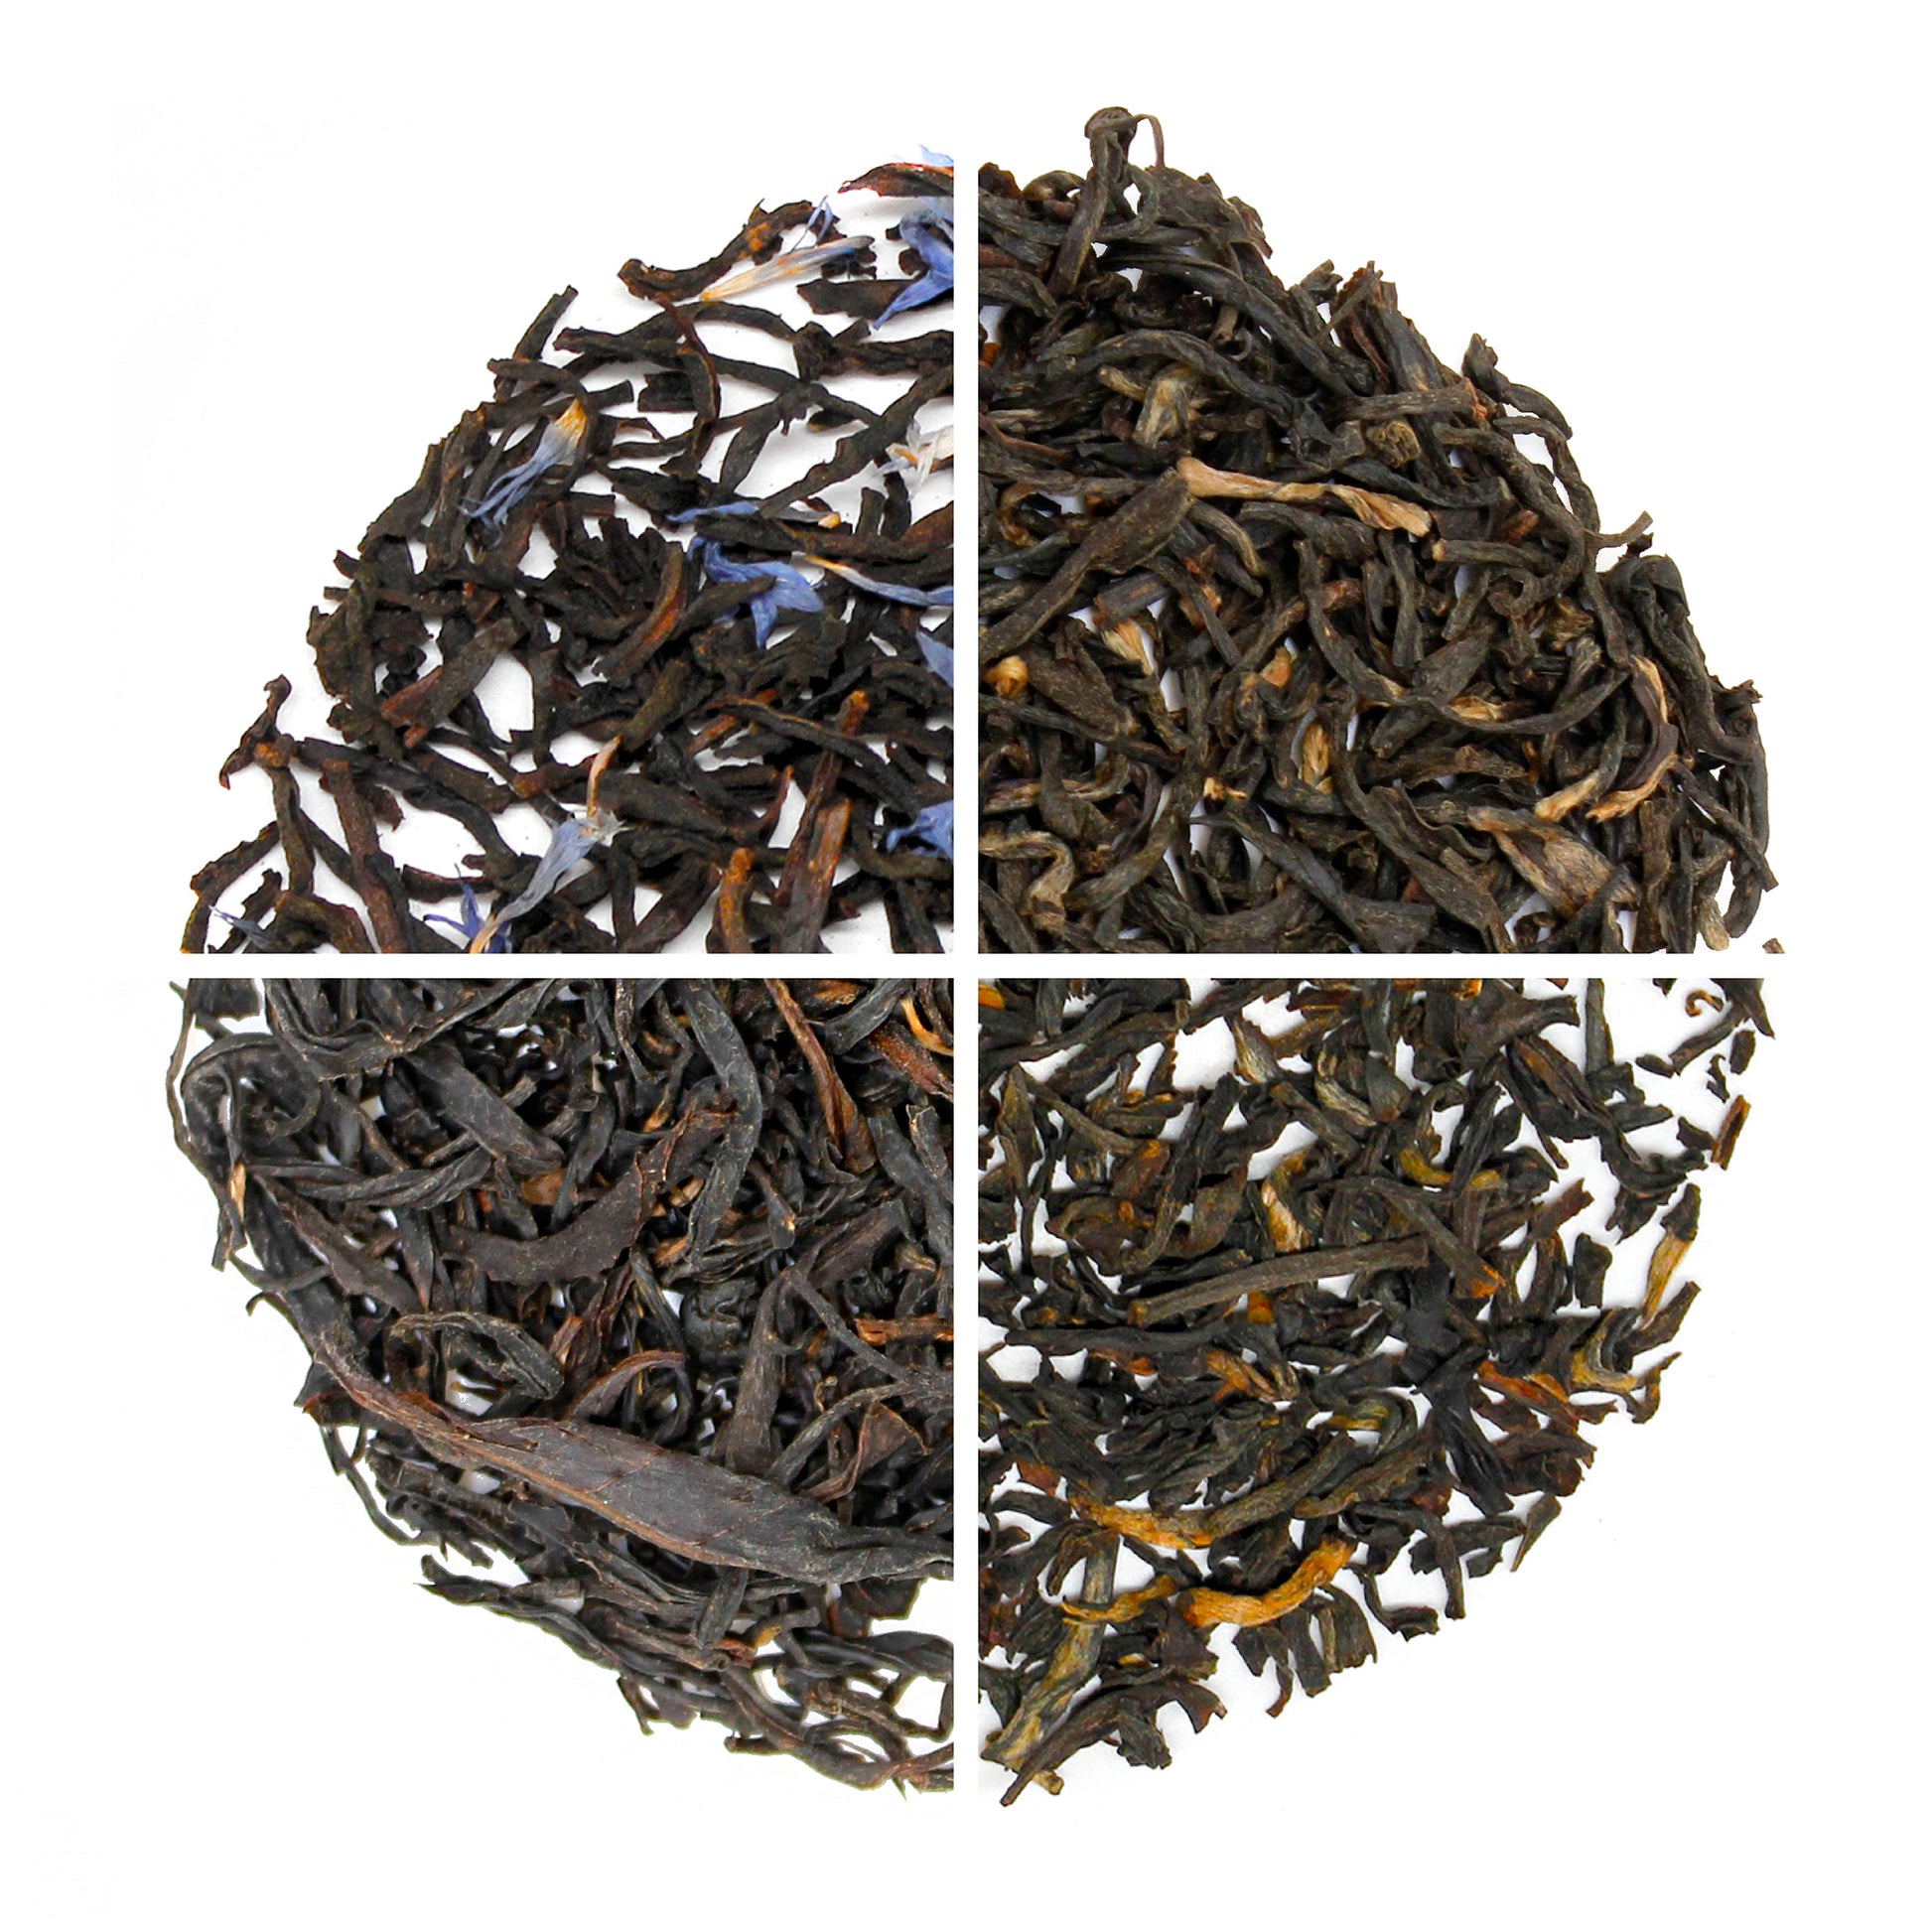 Black Tea Sampler - contents